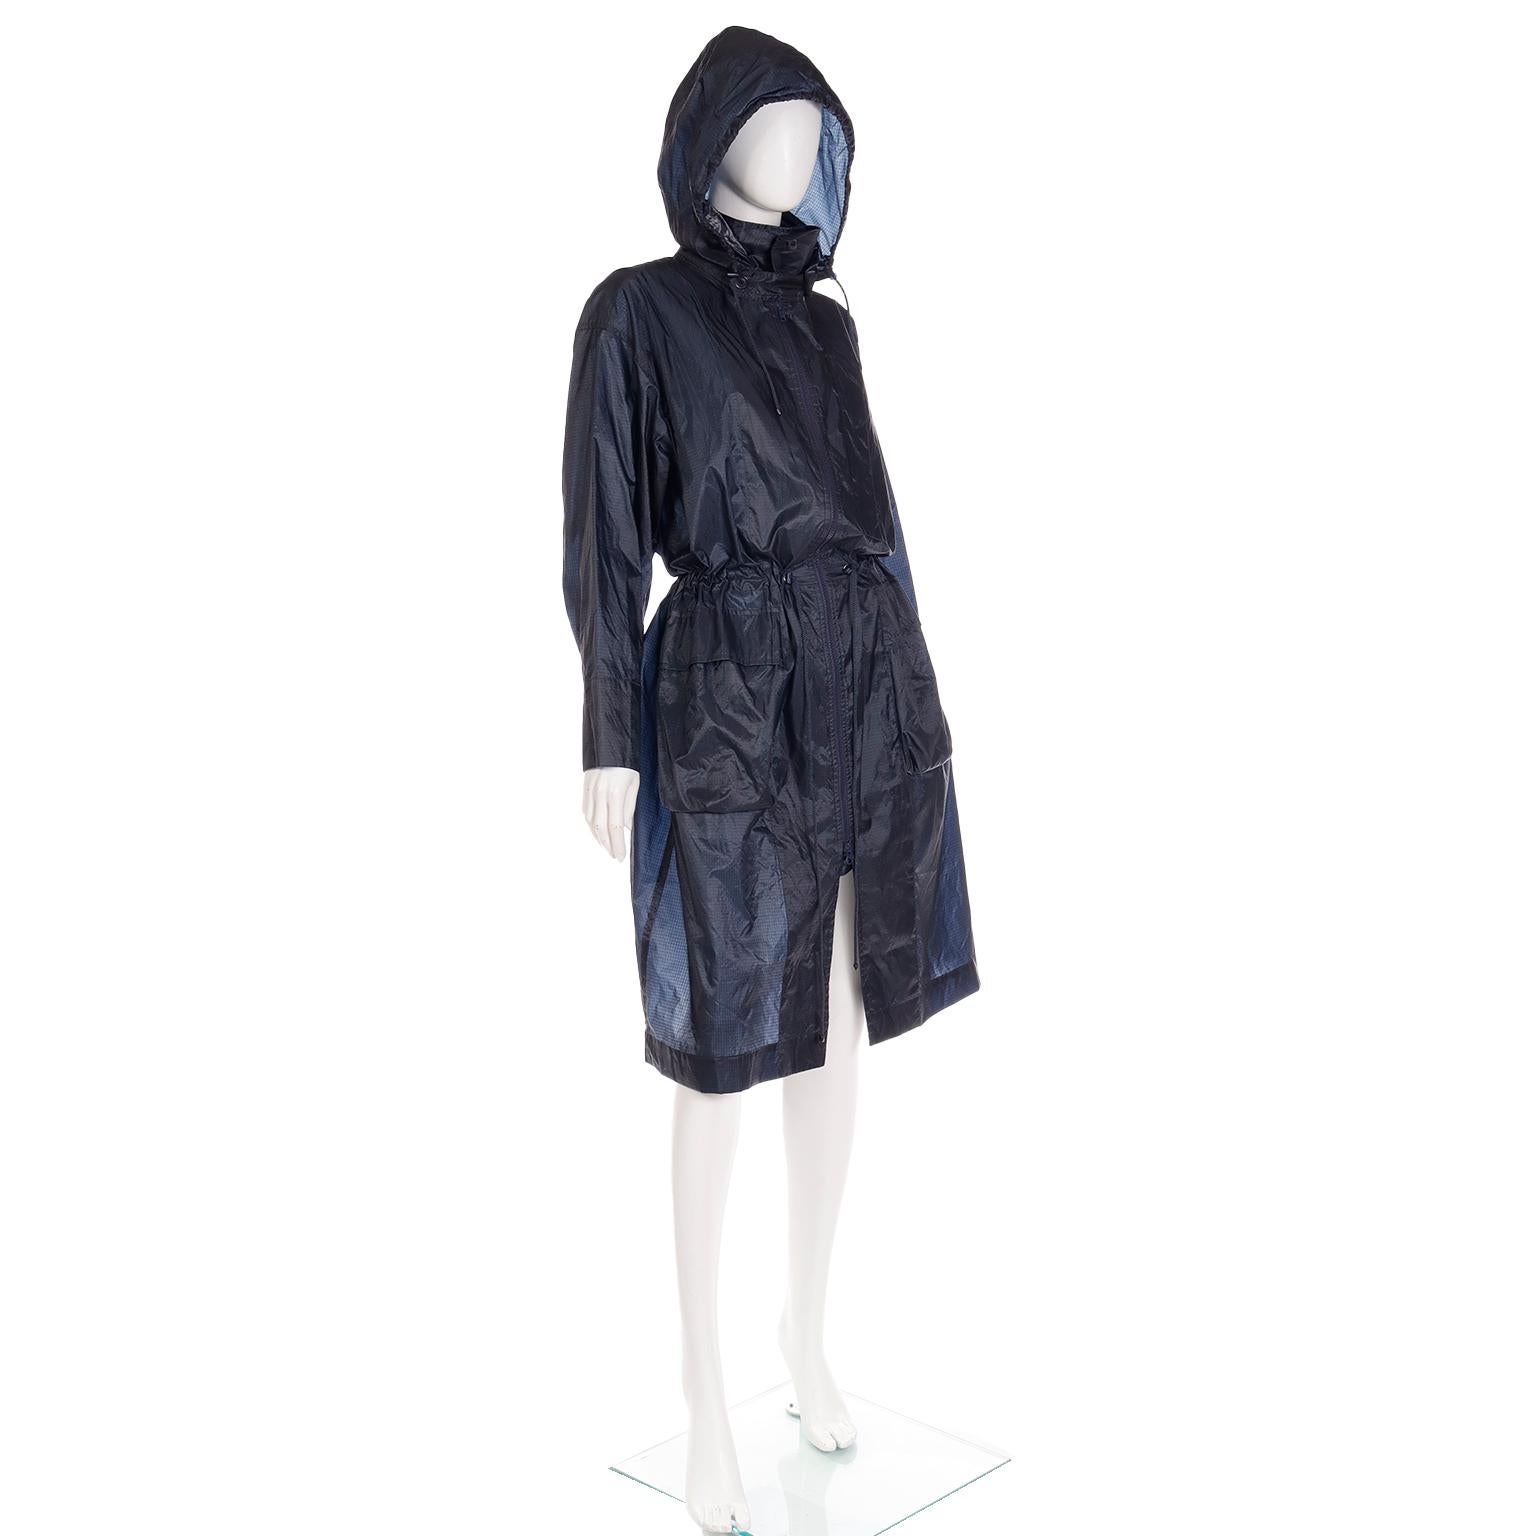  Issey Miyake - Manteau vintage à capuche converti en sac, années 1990 Unisexe 